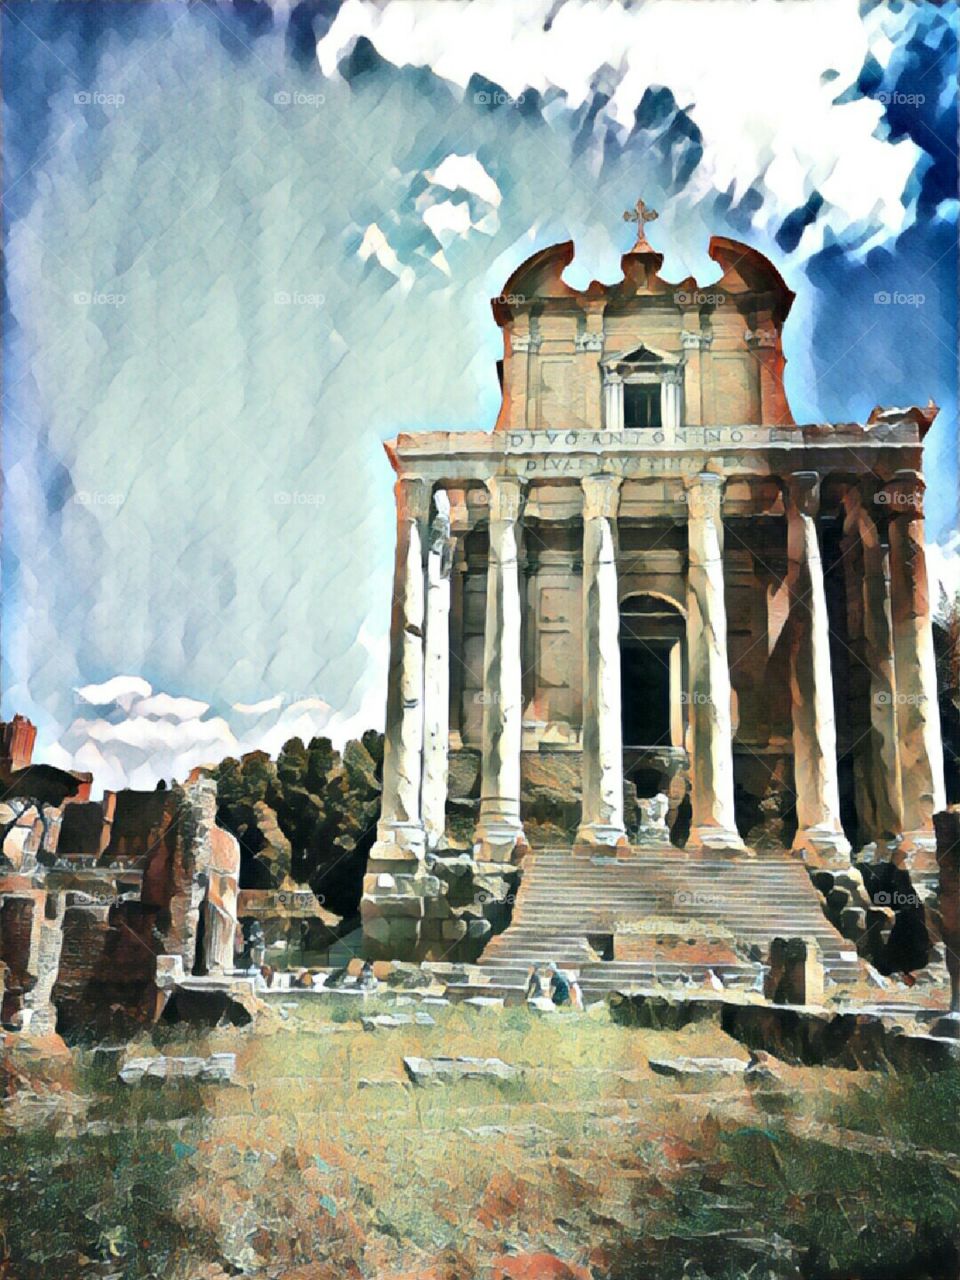 Amcient Rome